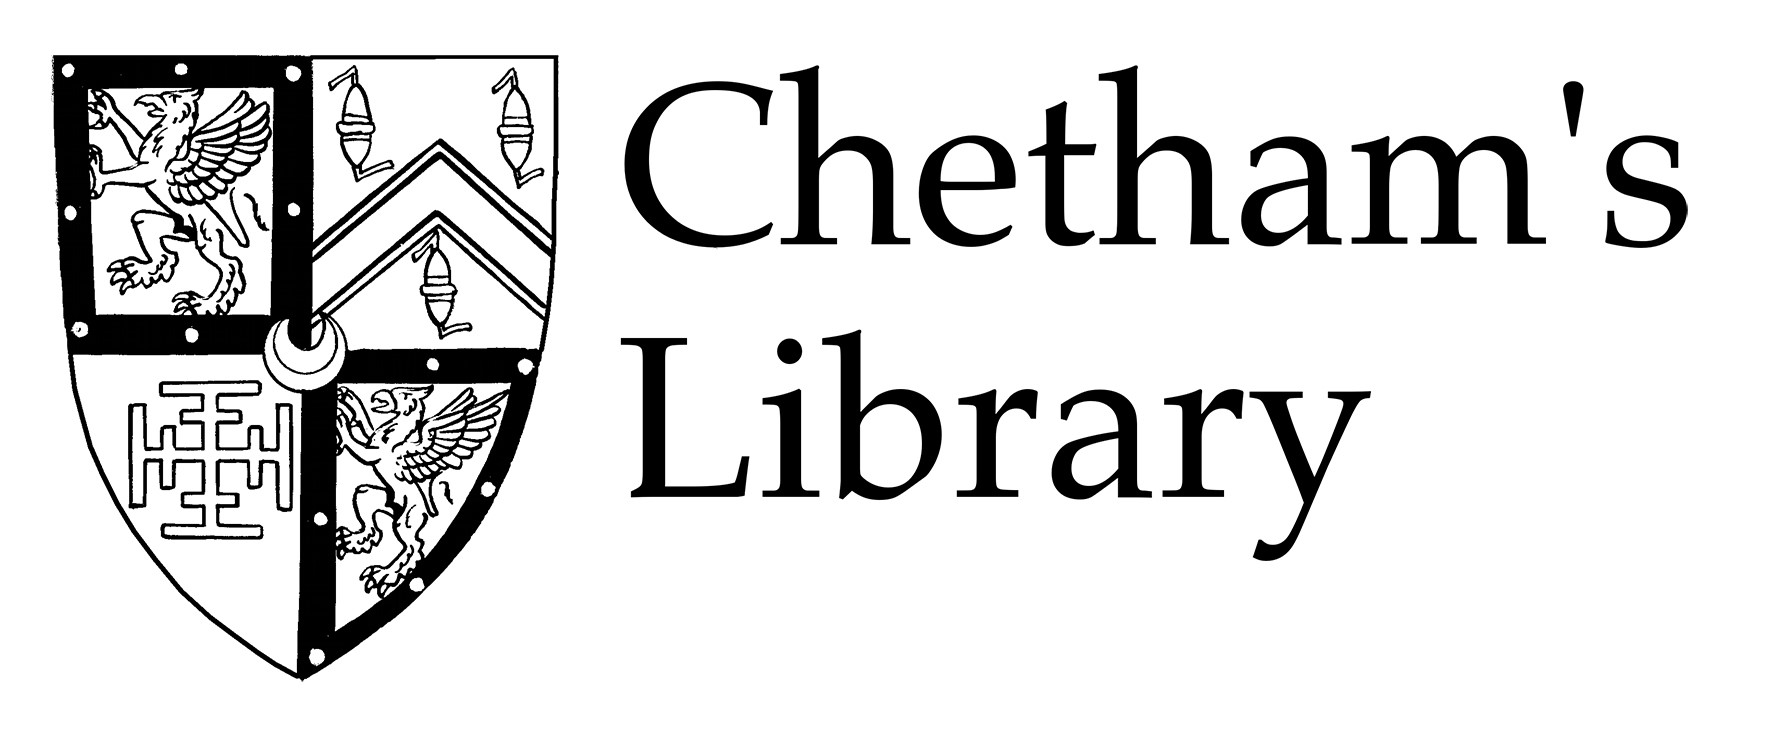 Cheethams Library